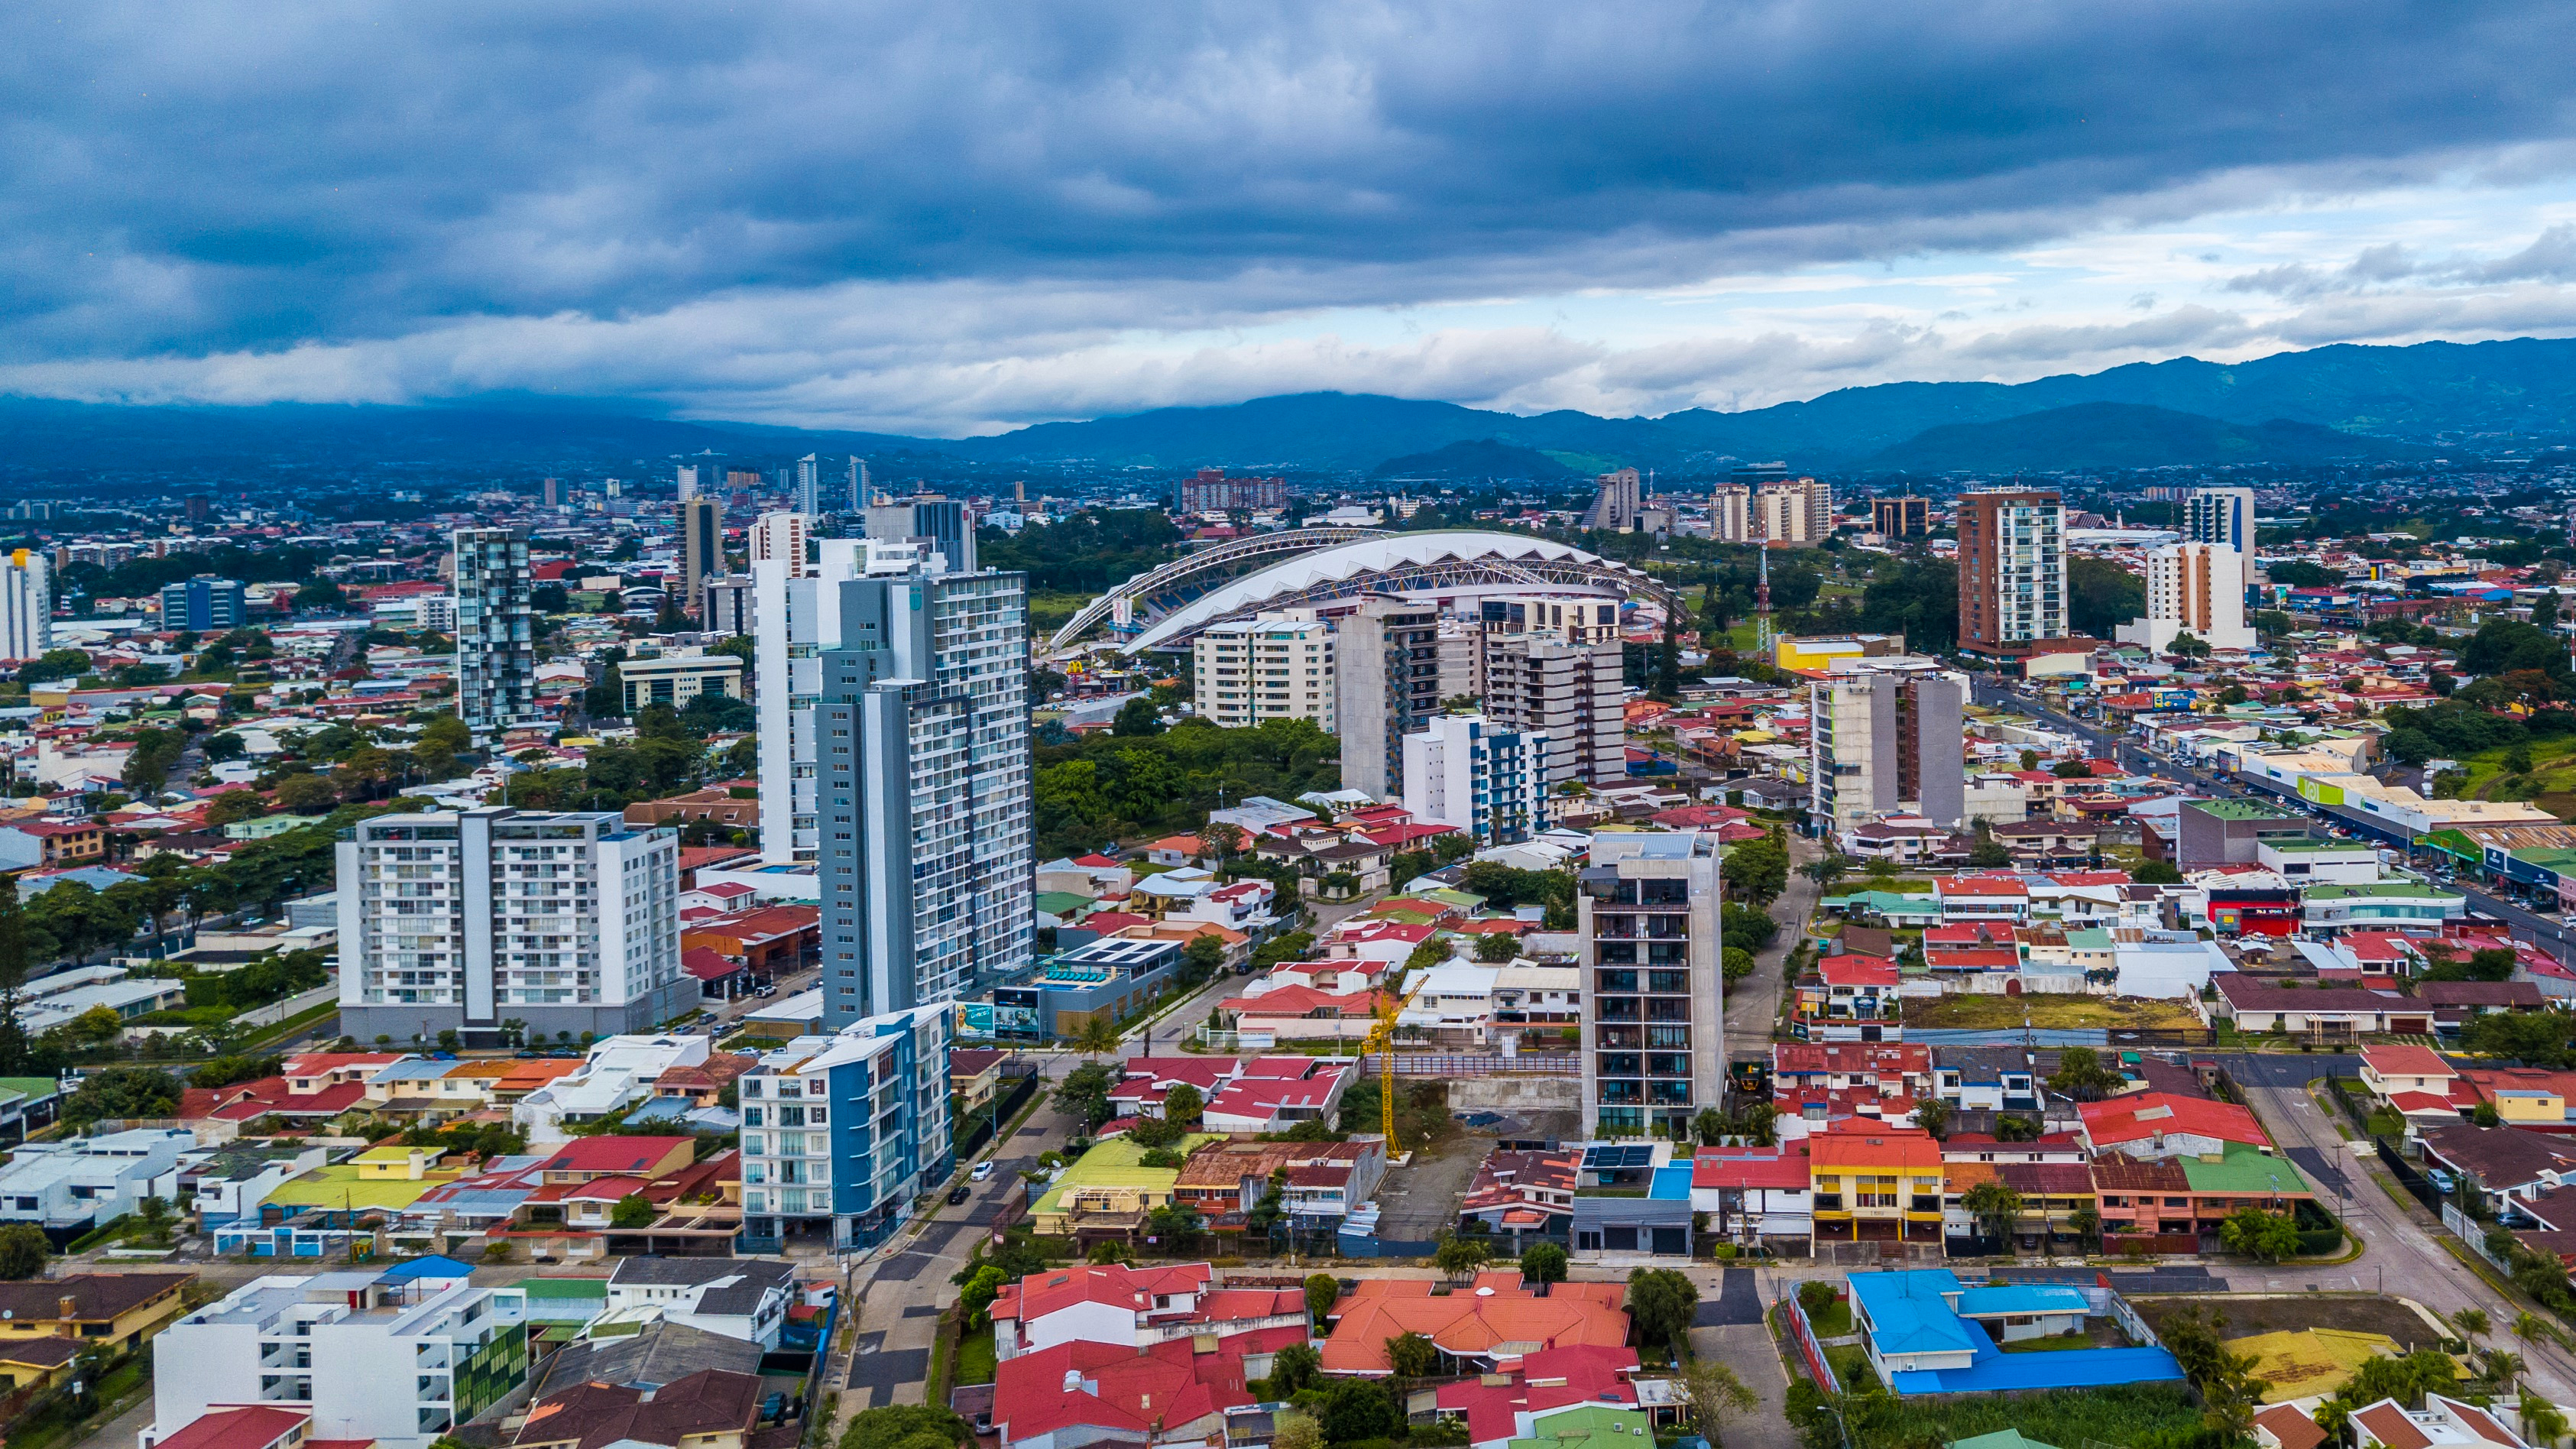 Vista aérea de San José, Costa Rica (Shutterstock)